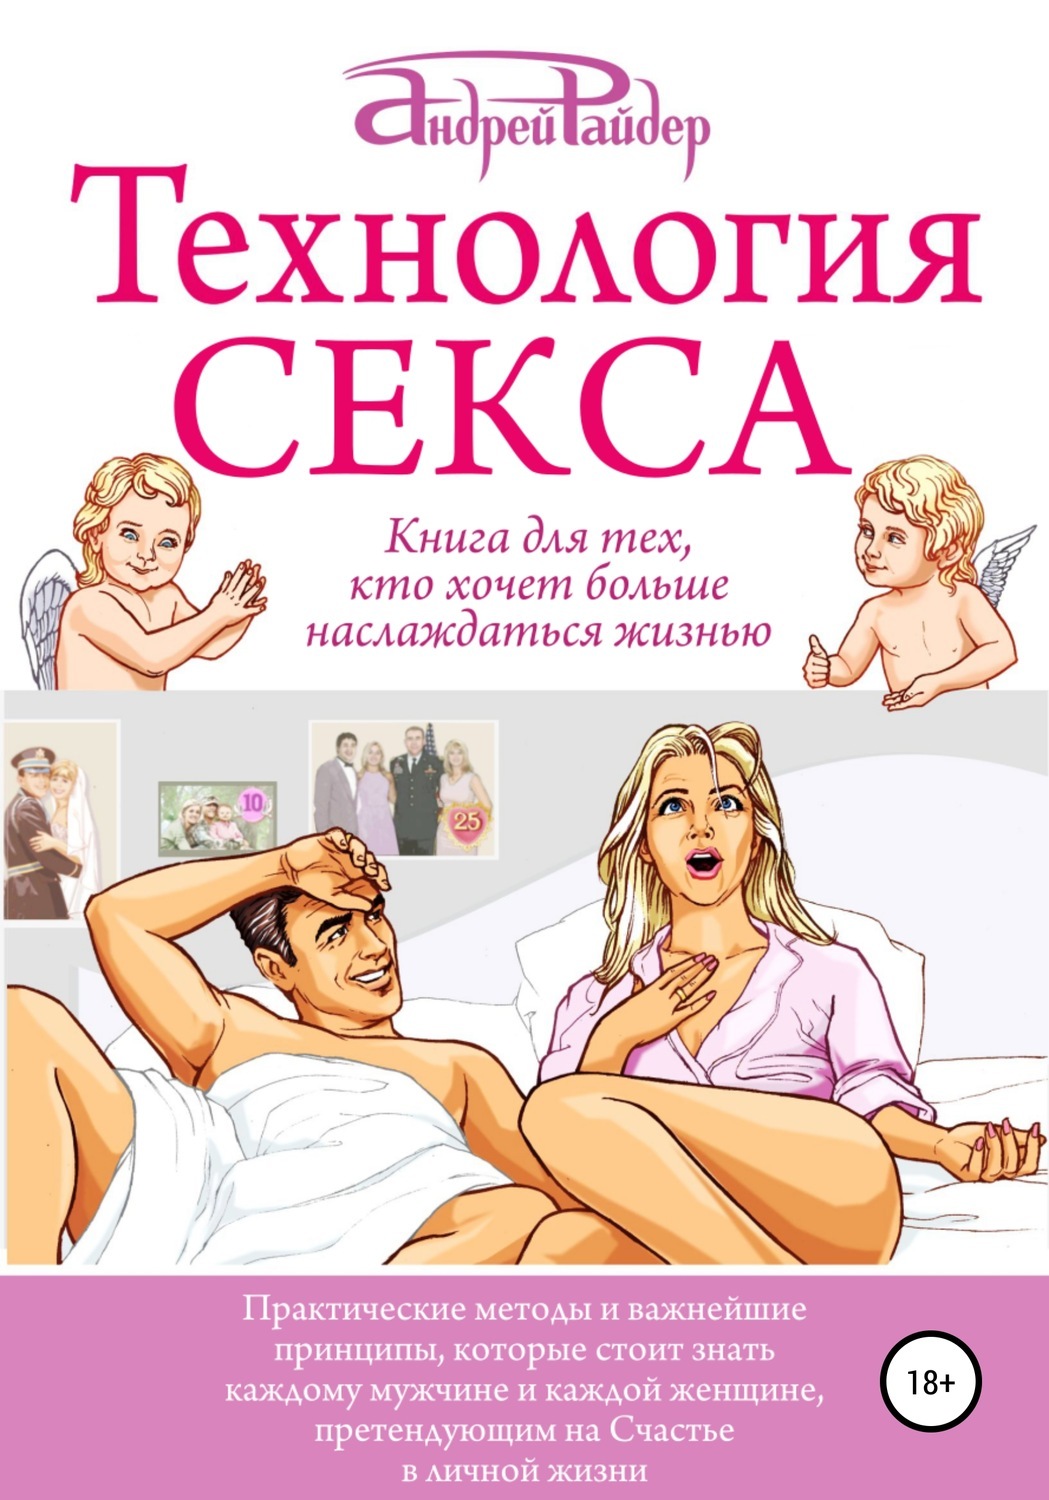 Руководство по сексу в своем доме